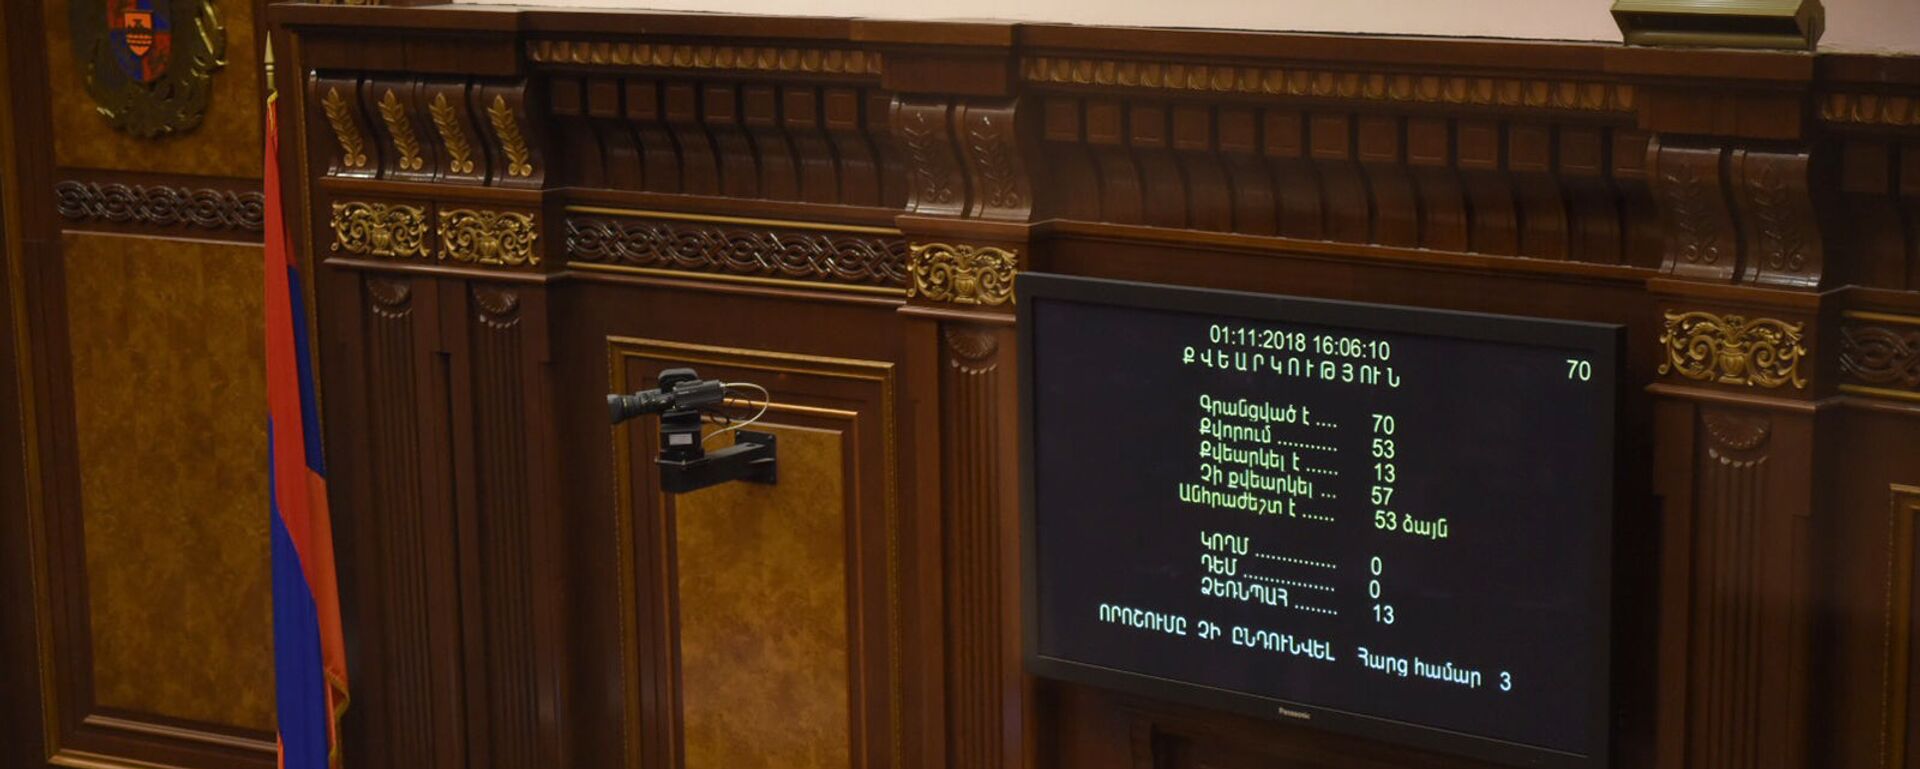 Итоги голосования в Парламенте РА (01 ноября 2018). Ереван - Sputnik Армения, 1920, 05.05.2021